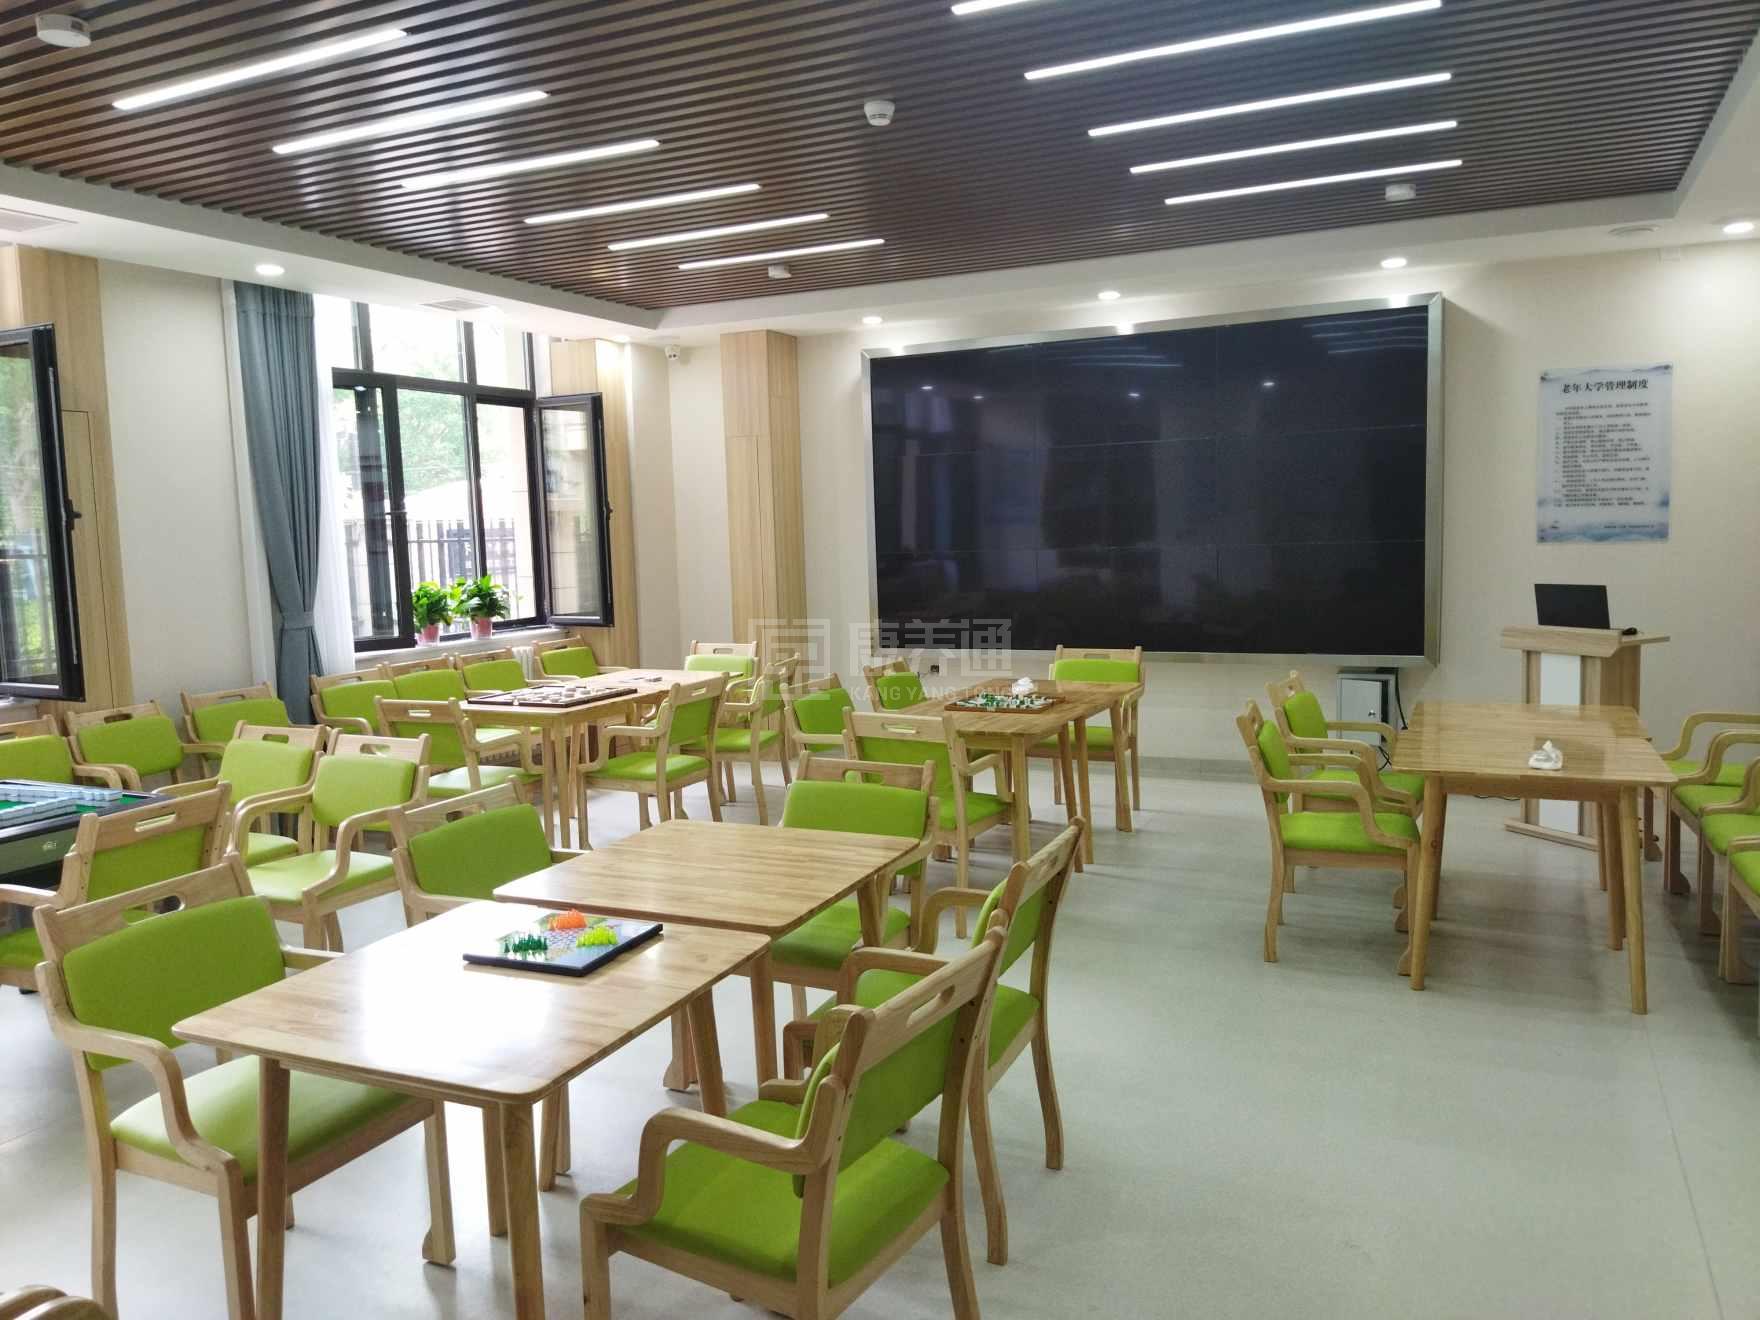 天津市武清区下朱庄街社区嵌入式养老服务中心环境图-餐台